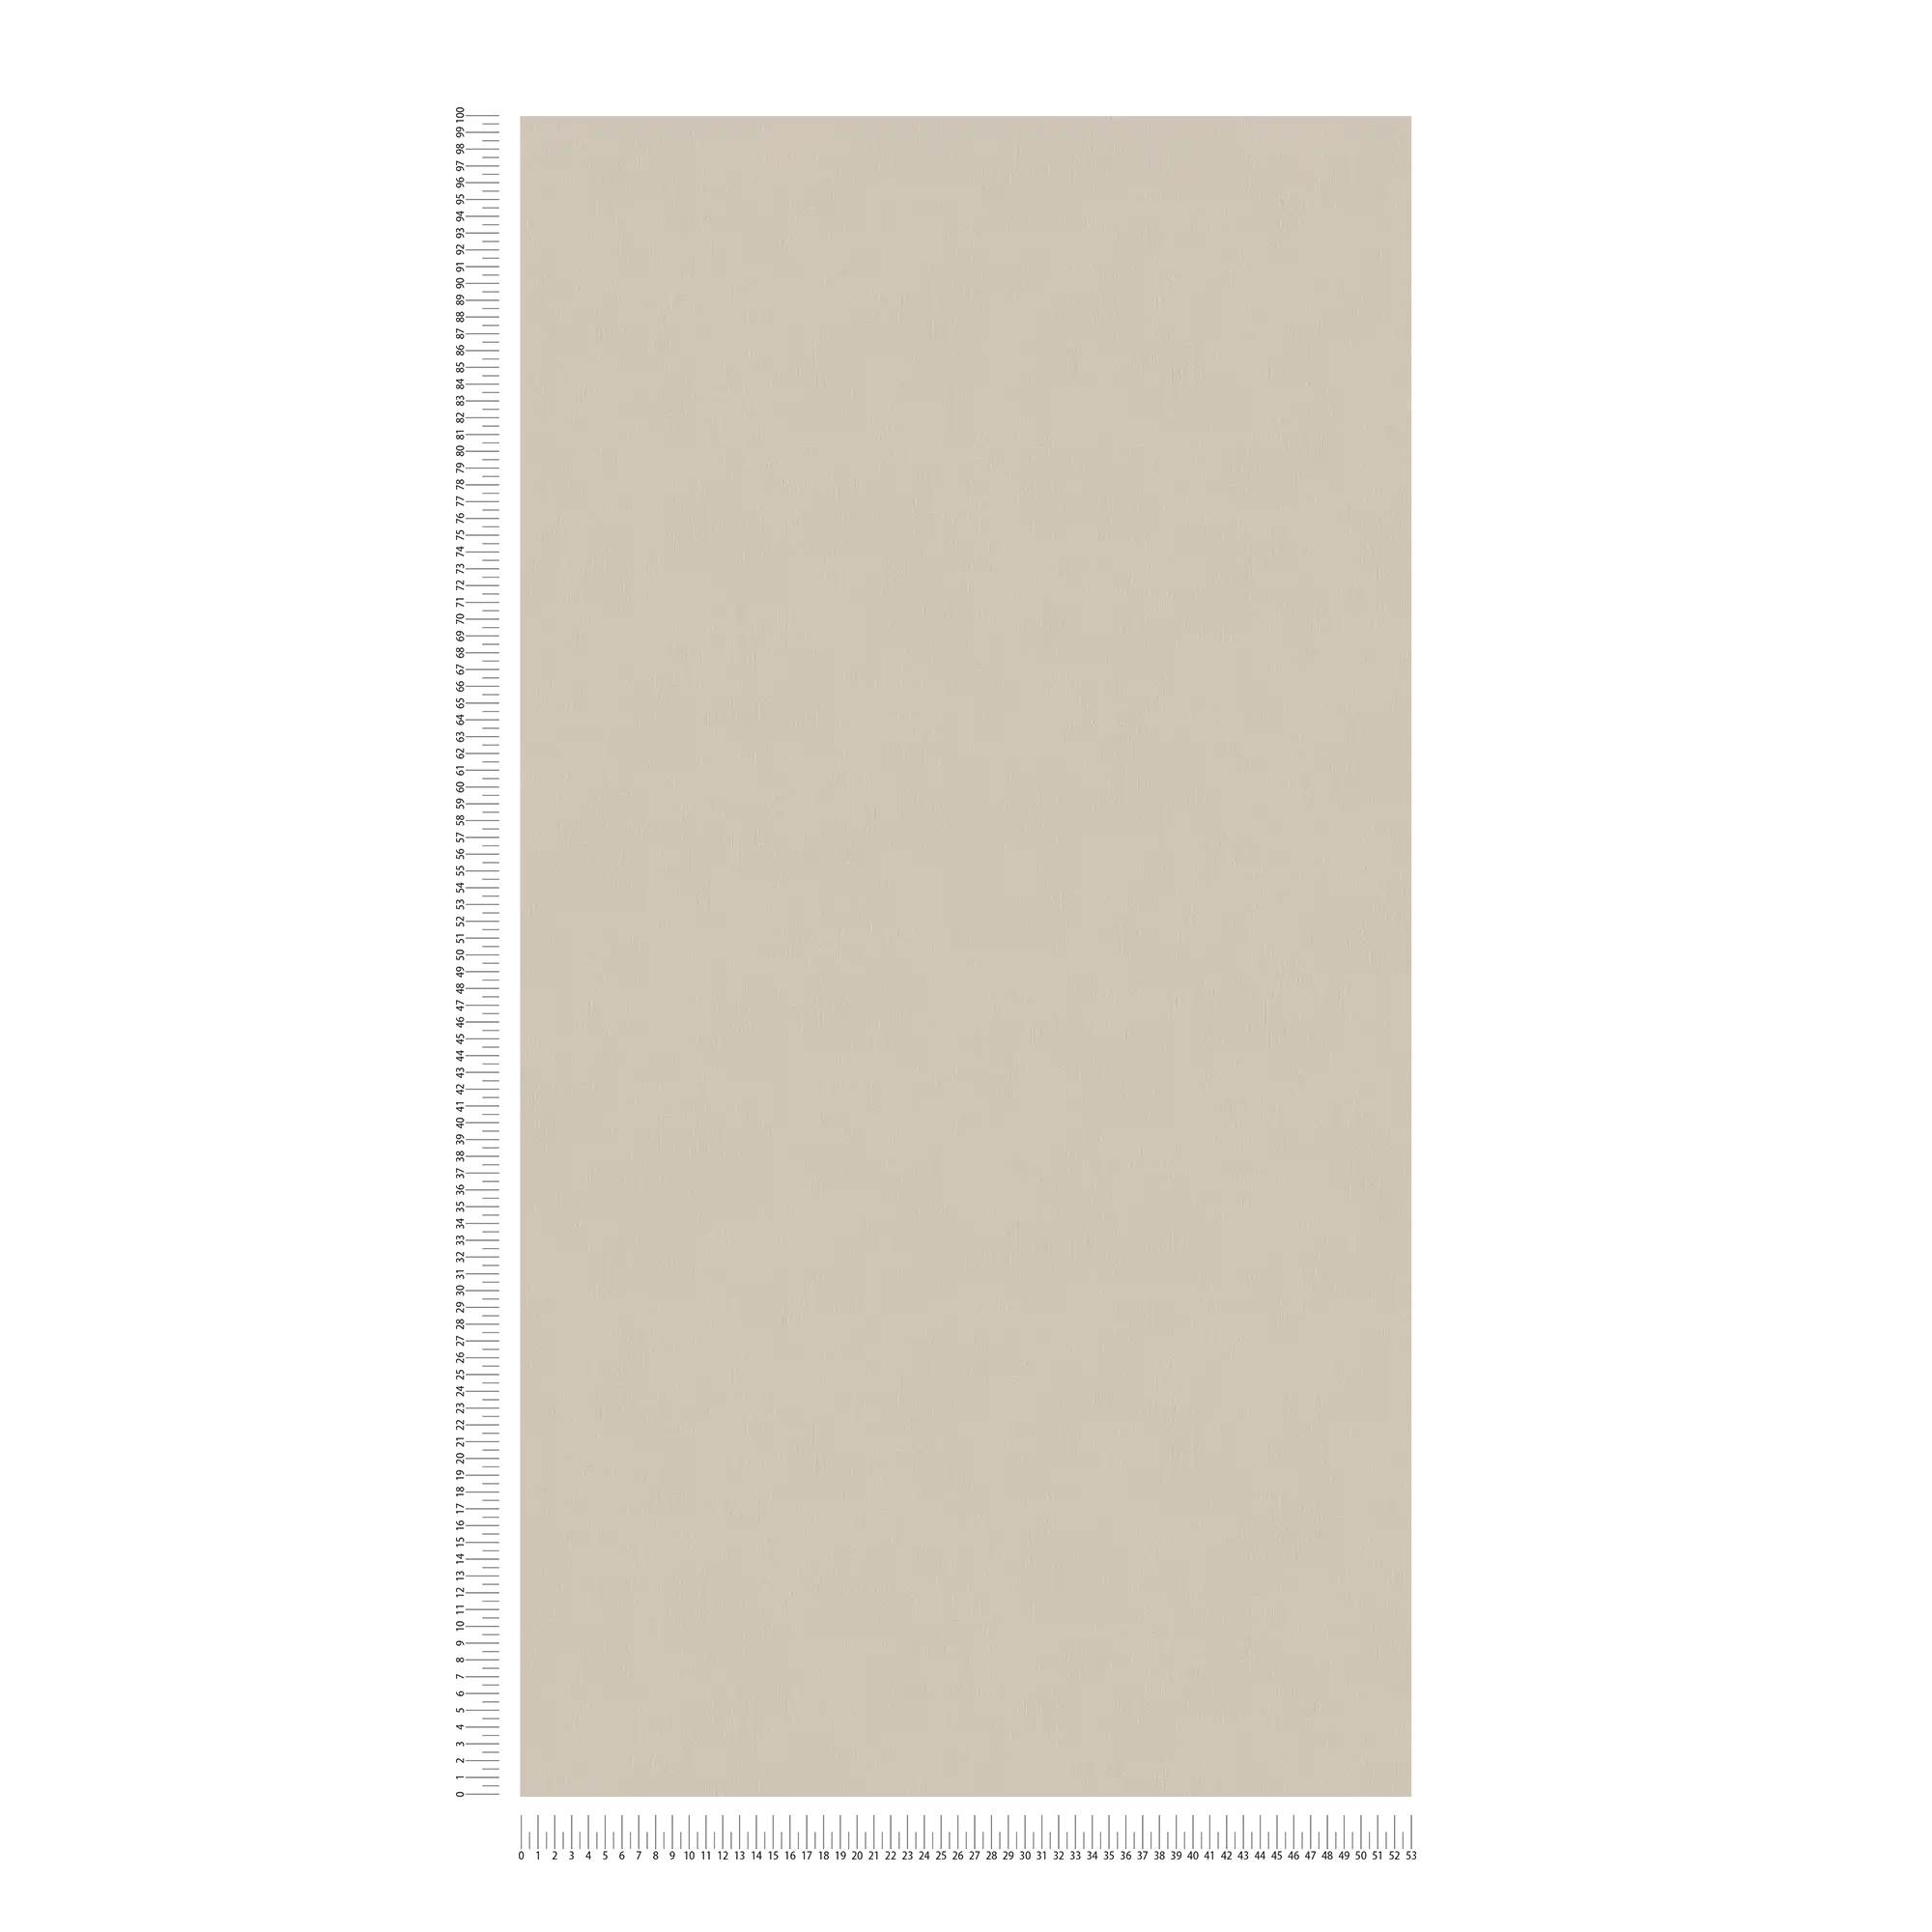             Carta da parati in tessuto non tessuto grigio-marrone chiaro con superficie liscia
        